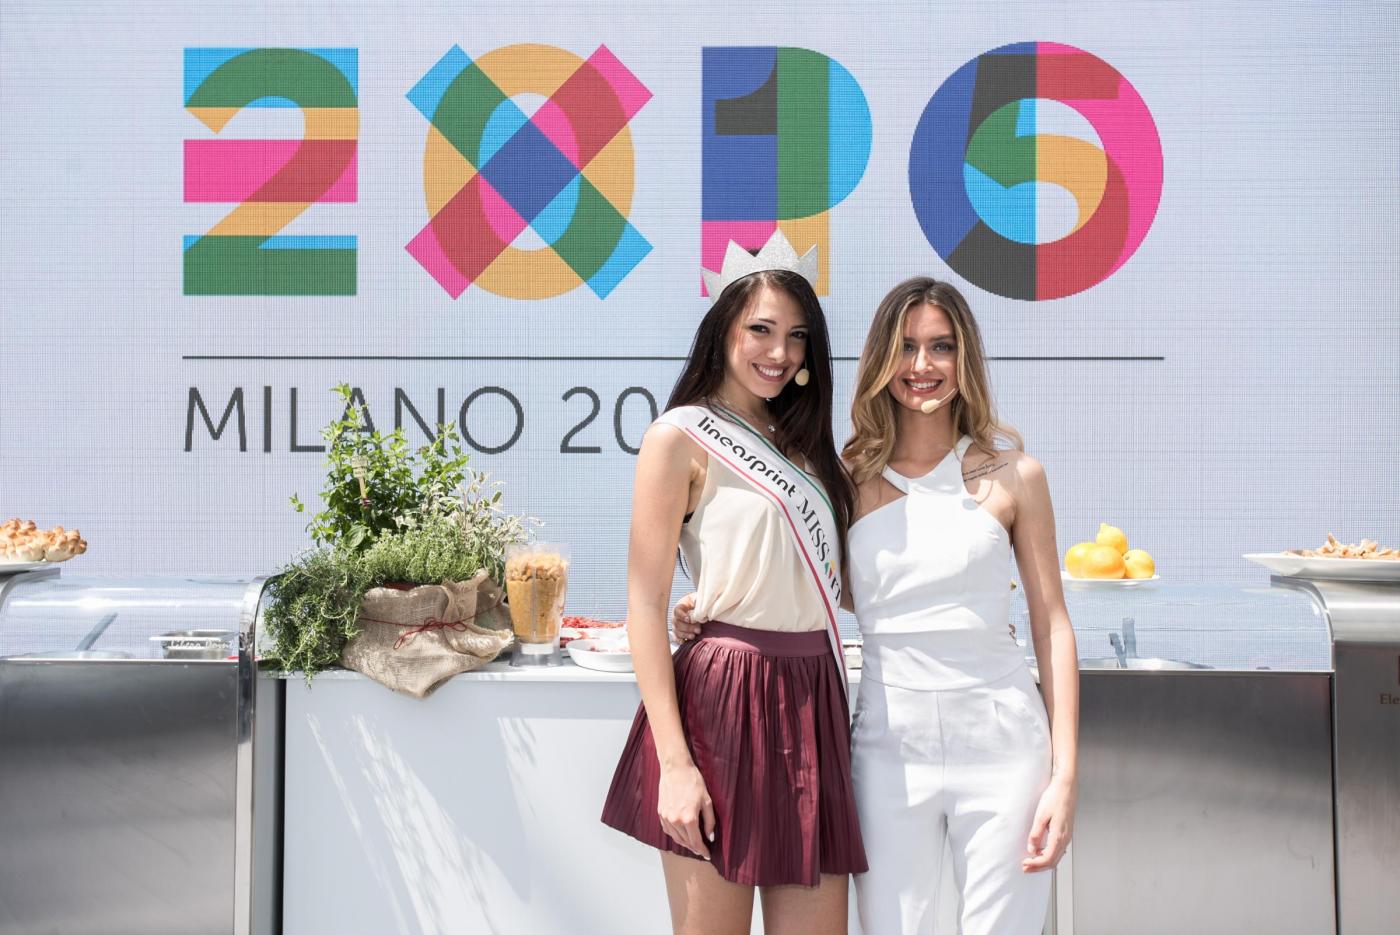 Clarissa Marchese e Giulia Arena, due Miss Italia ai fornelli di Expo 4